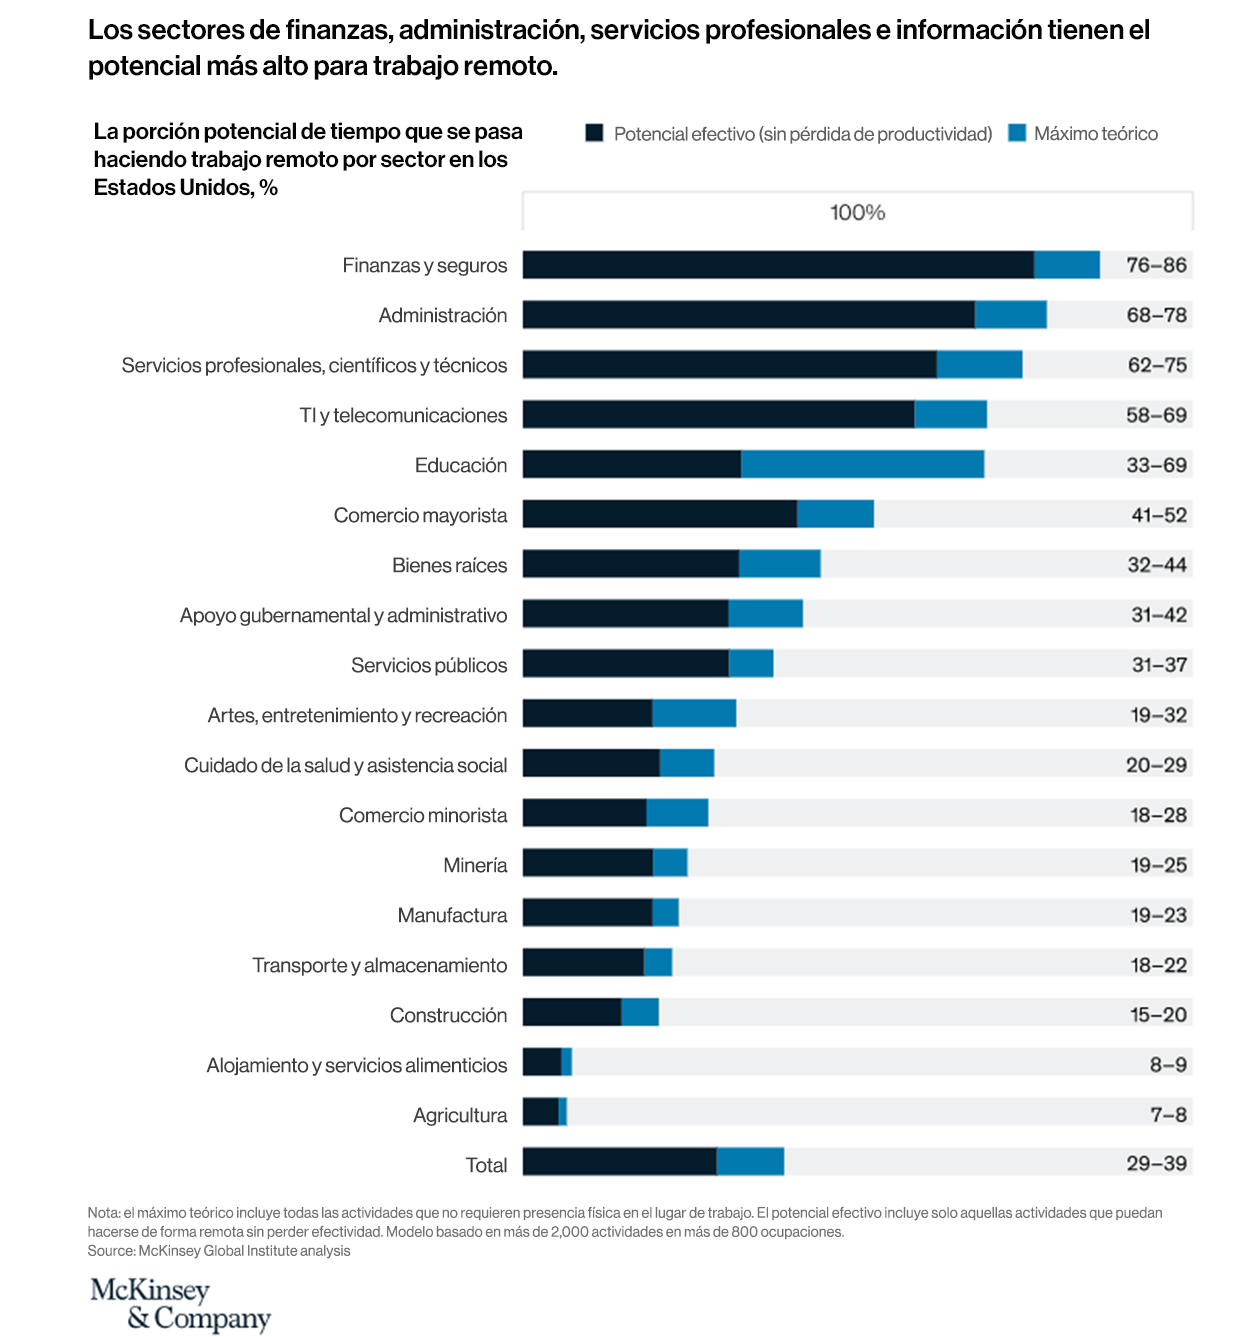 Imagen 1 - Informe de McKinsey sobre el futuro del trabajo a distancia: un análisis de 2,000 tareas, 800 empleos y nueve países, noviembre de 2020